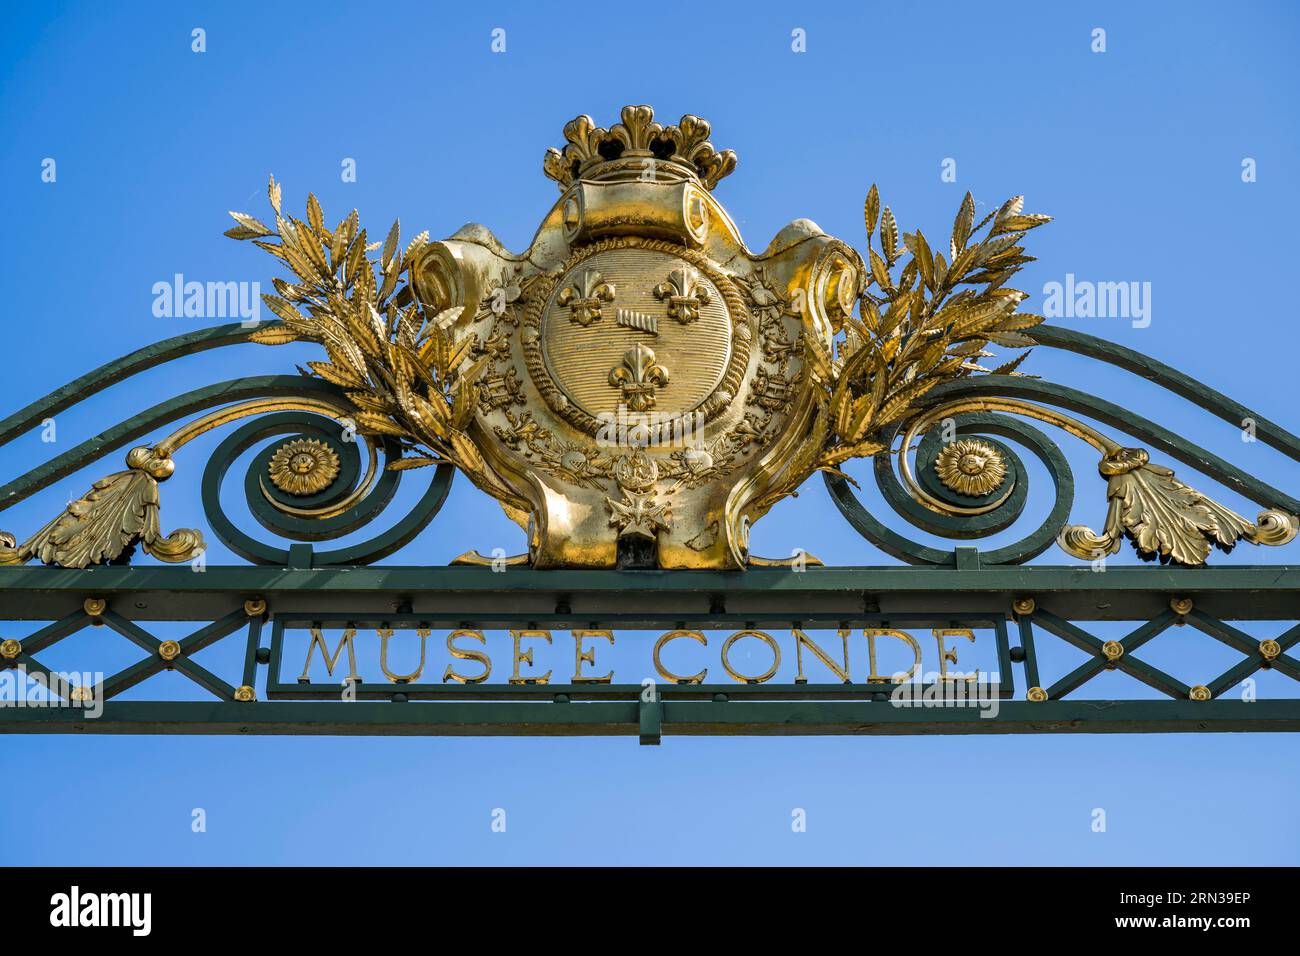 France, Oise, Chantilly, le château de Chantilly et le musée Condé, porte d'honneur aux emblèmes royaux (la fleur-de-lis) Banque D'Images